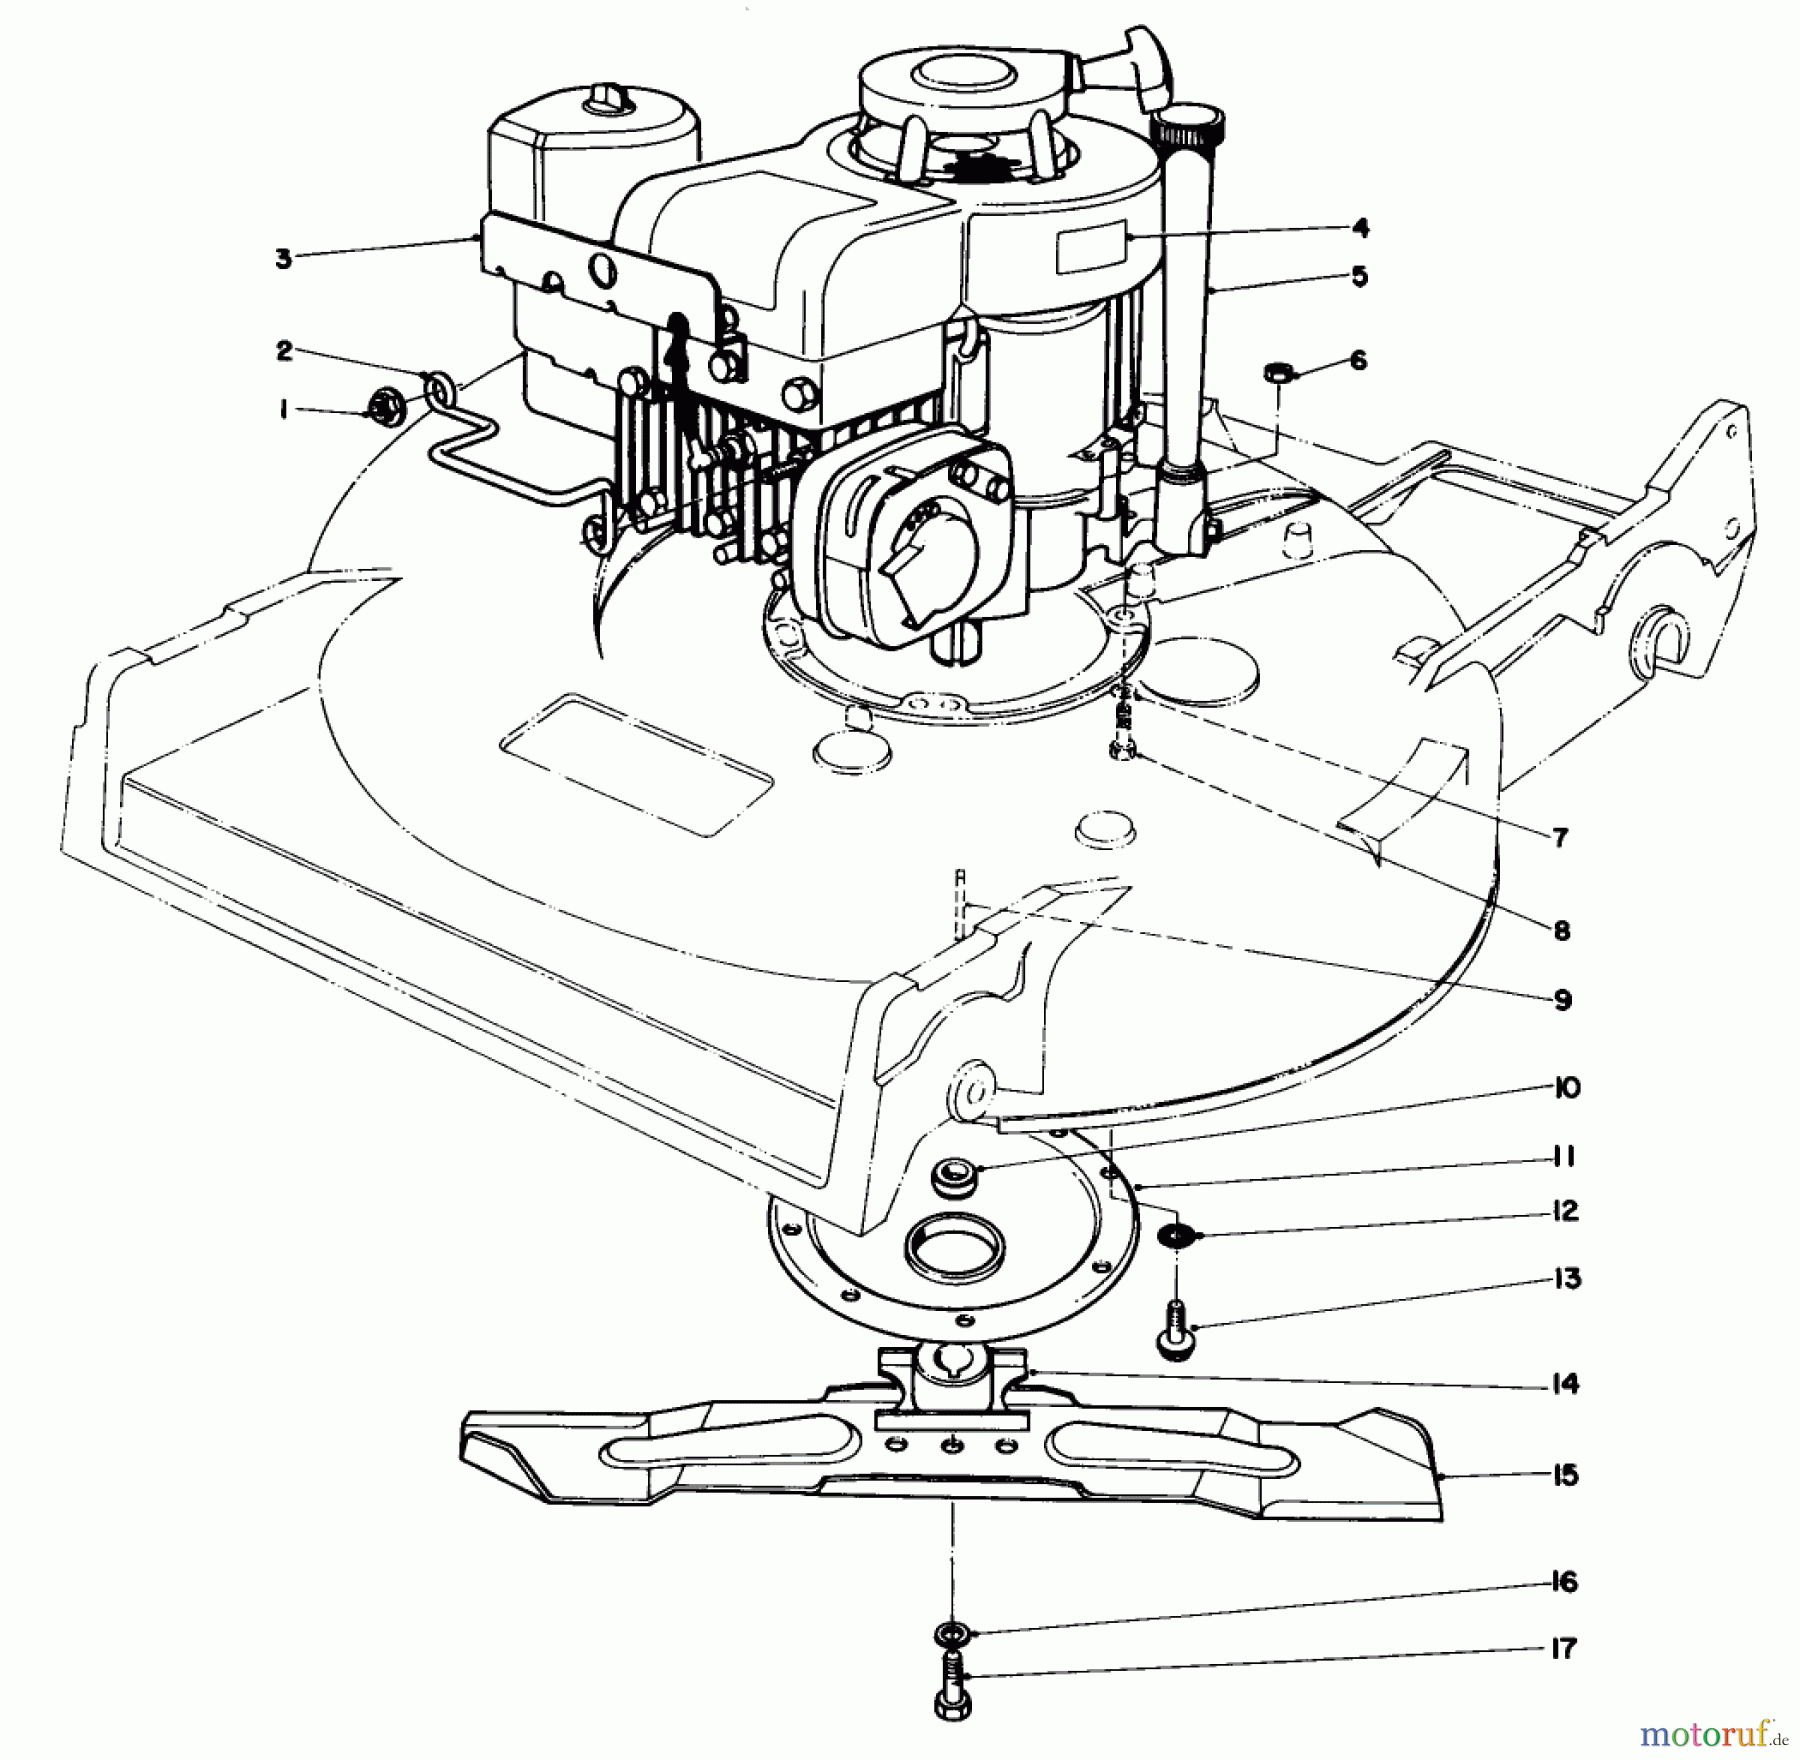  Toro Neu Mowers, Walk-Behind Seite 2 22020 - Toro Lawnmower, 1984 (4000001-4999999) ENGINE ASSEMBLY (MODEL 22015)